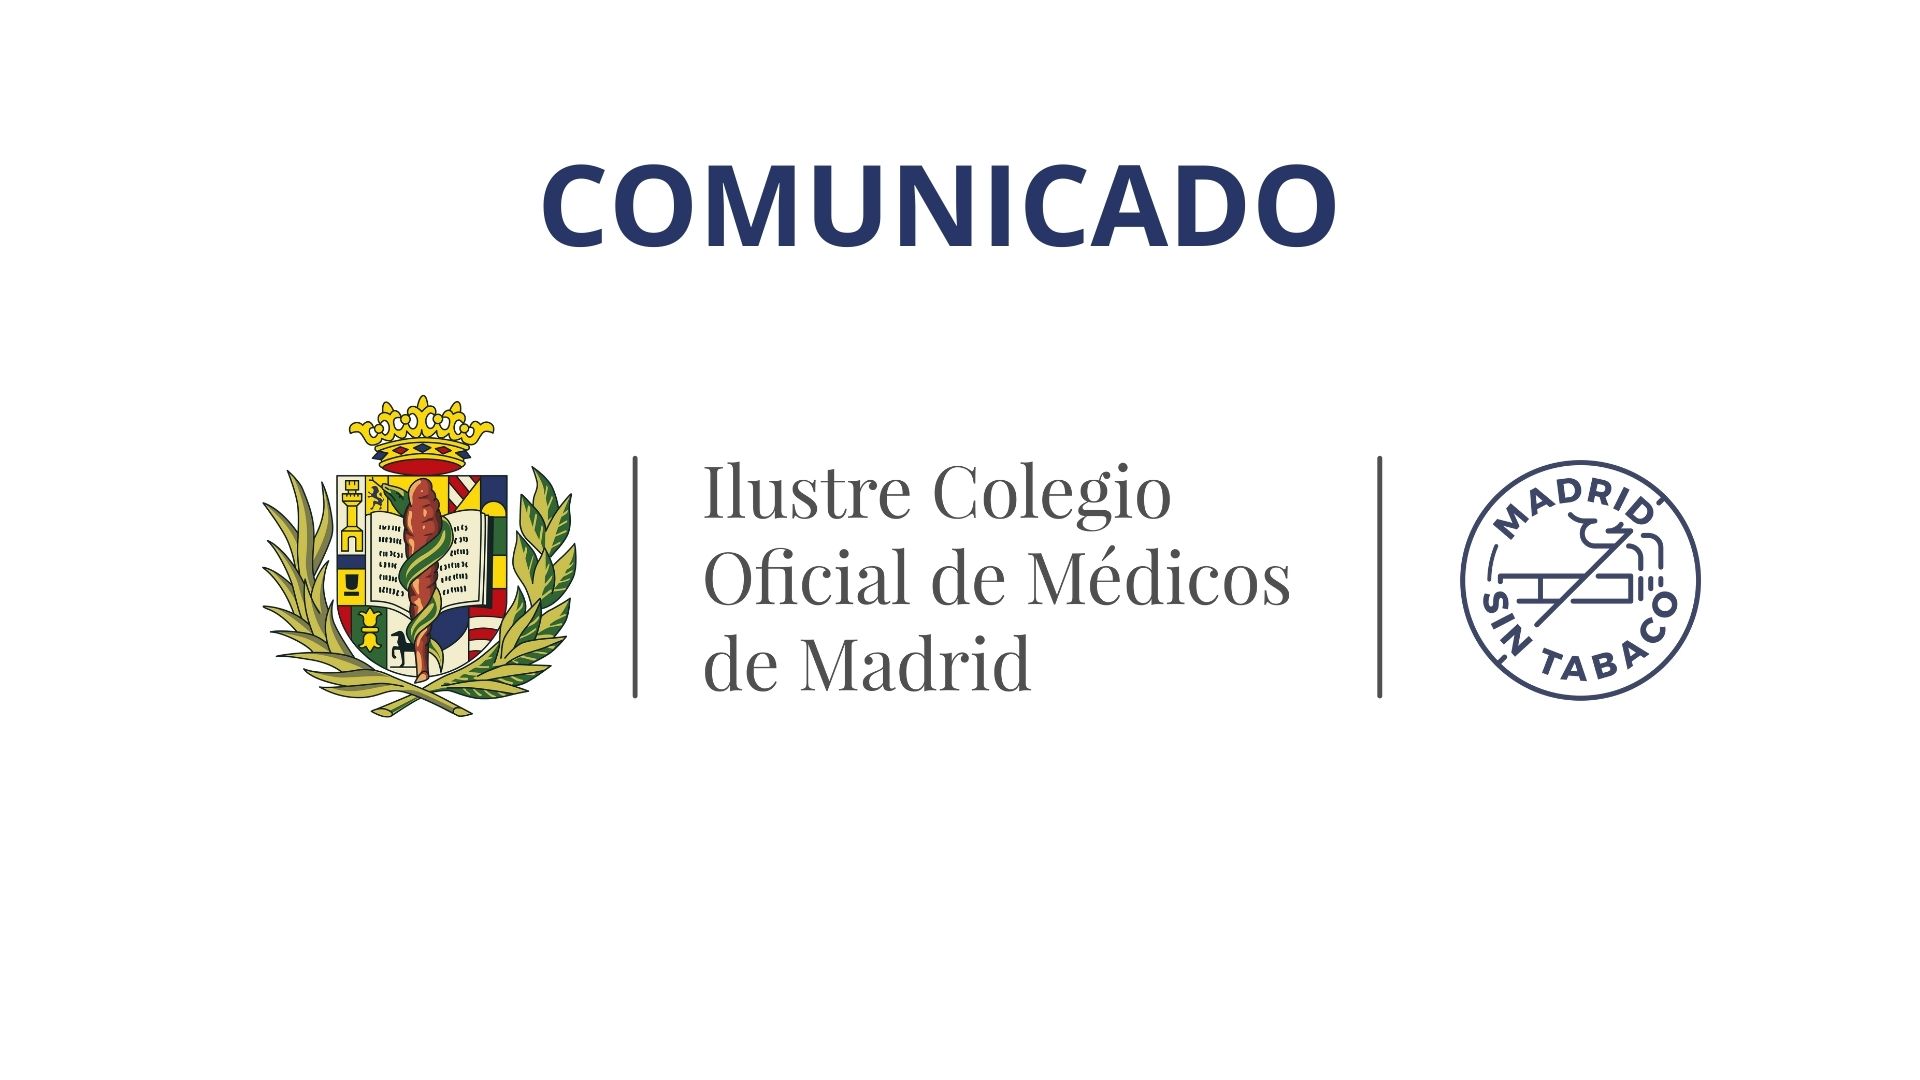 El presidente del ICOMEM y la Consejería de Sanidad de la Comunidad de Madrid llegan a un compromiso para estabilizar las plantillas presentes y futuras de la sanidad pública madrileña.